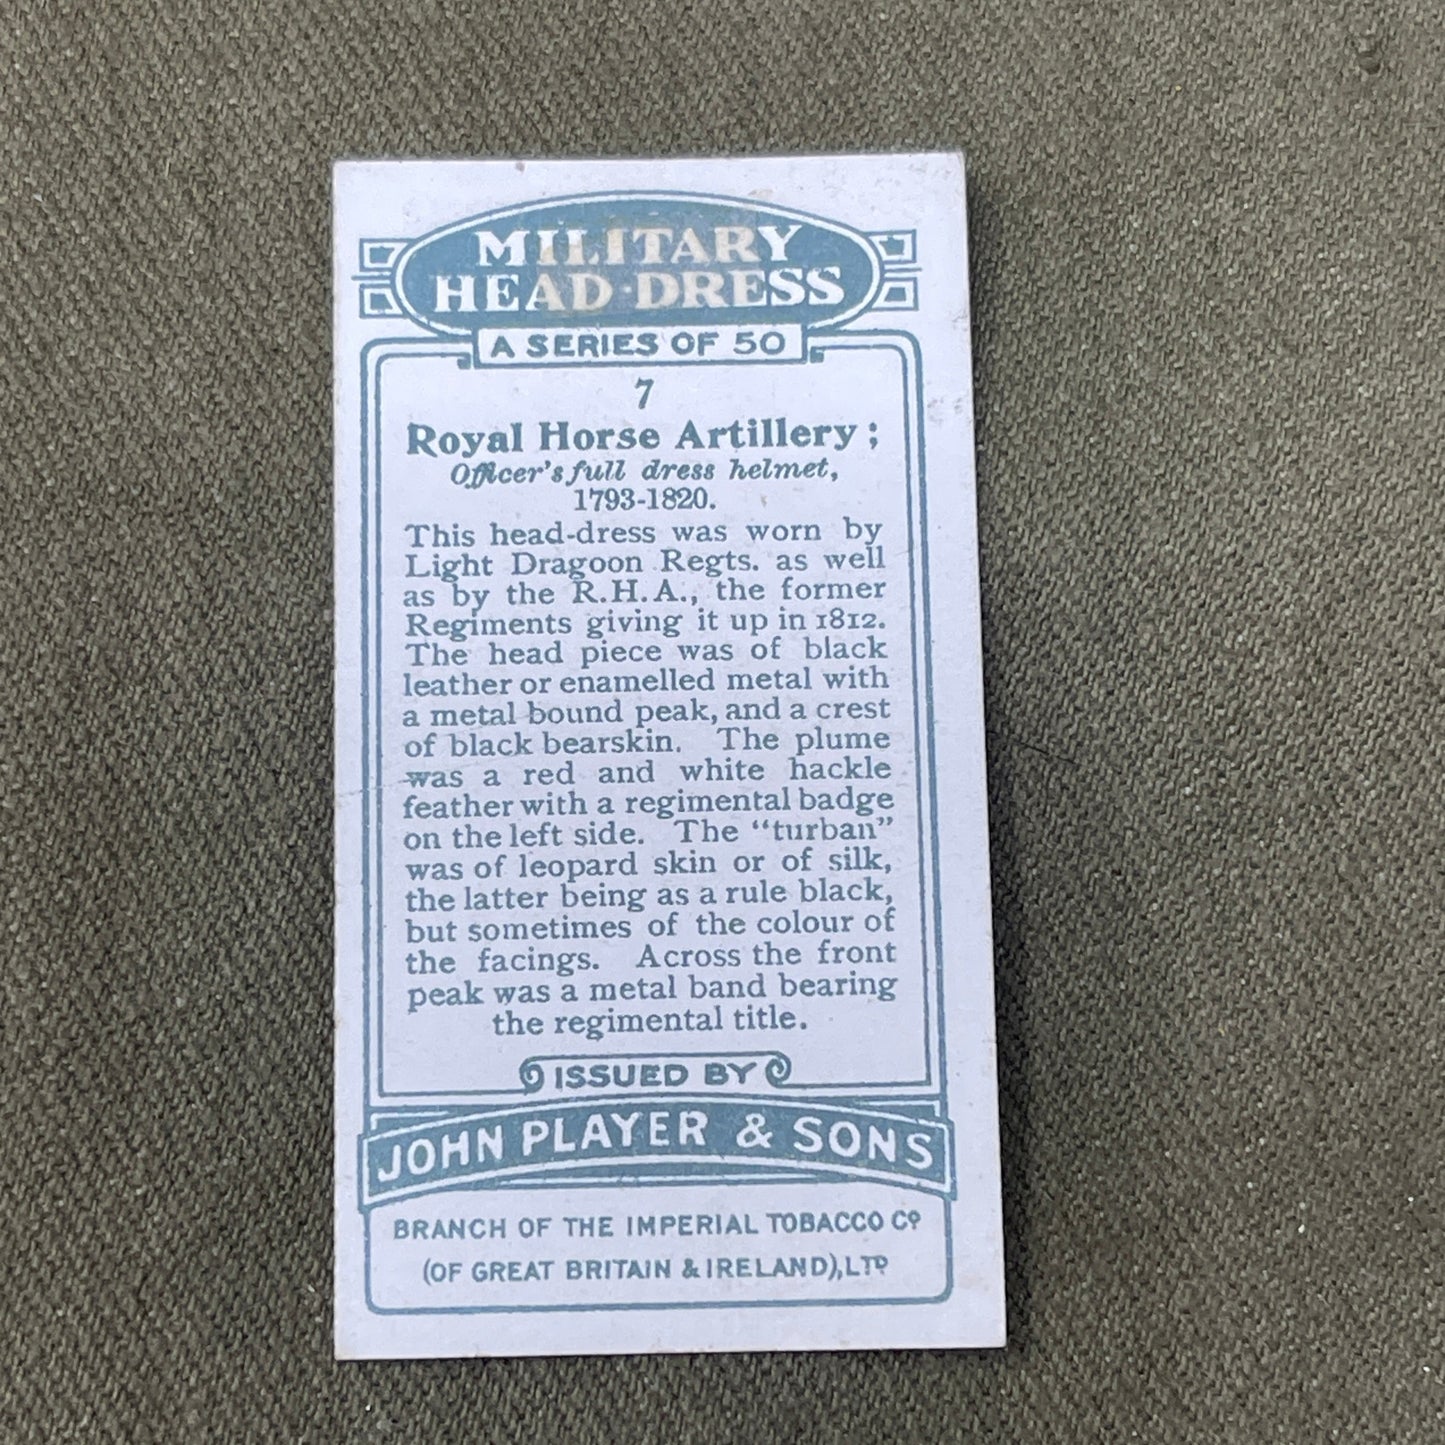 John Player & Sons Military Headdress Cigarette Cards 1931